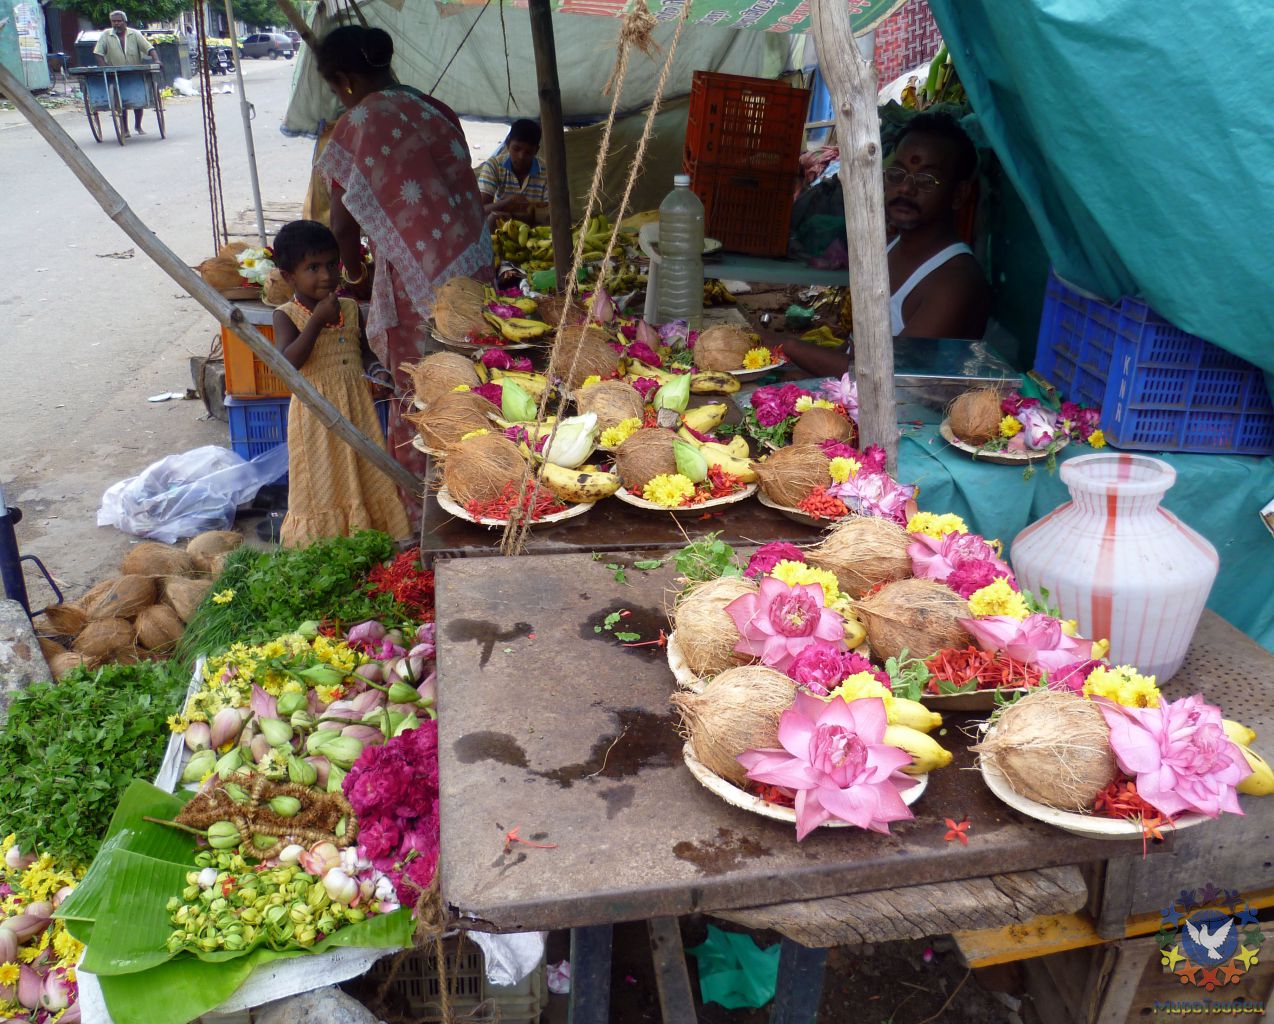 Множественные рыночки и базары вокруг храмов пестрят готовыми подношениями святым - группа в Индии, ноябрь 2011, часть 3 (стихия Воды)